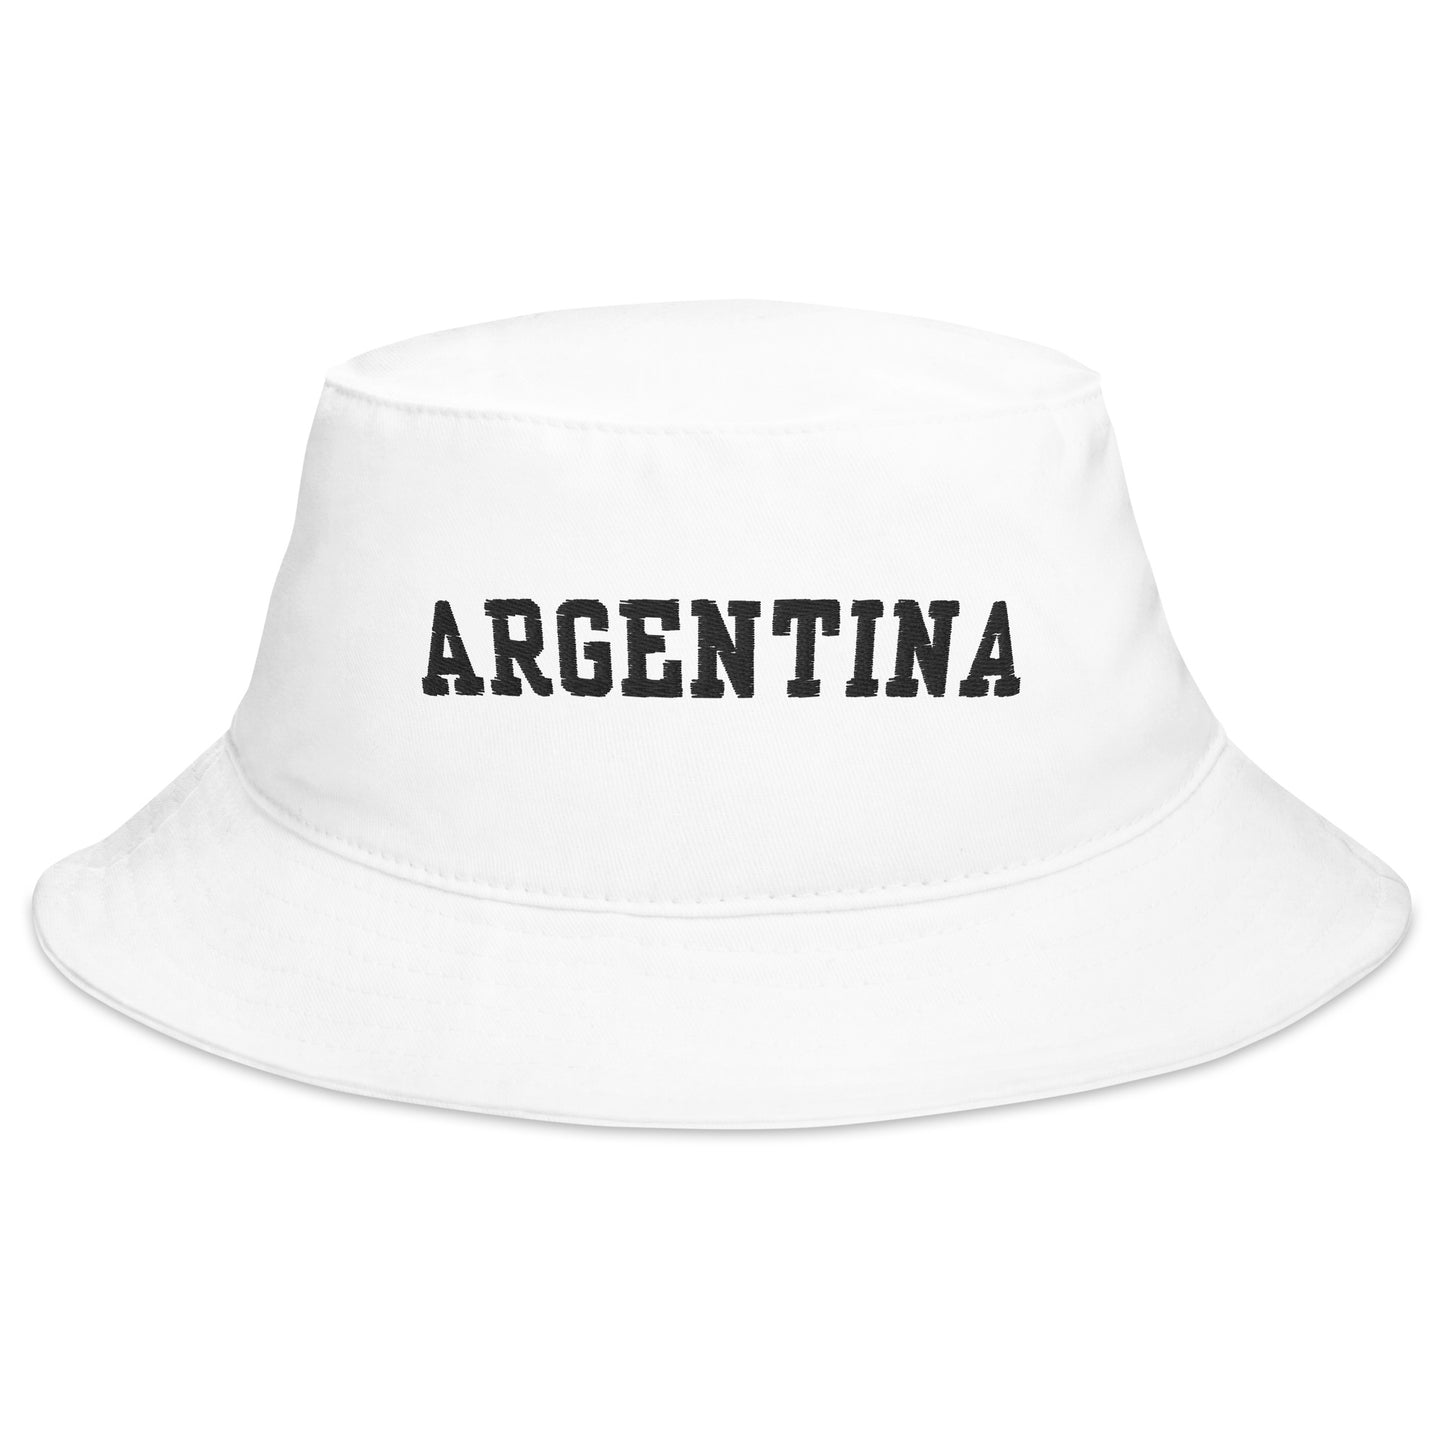 Argentina white Bucket Hat